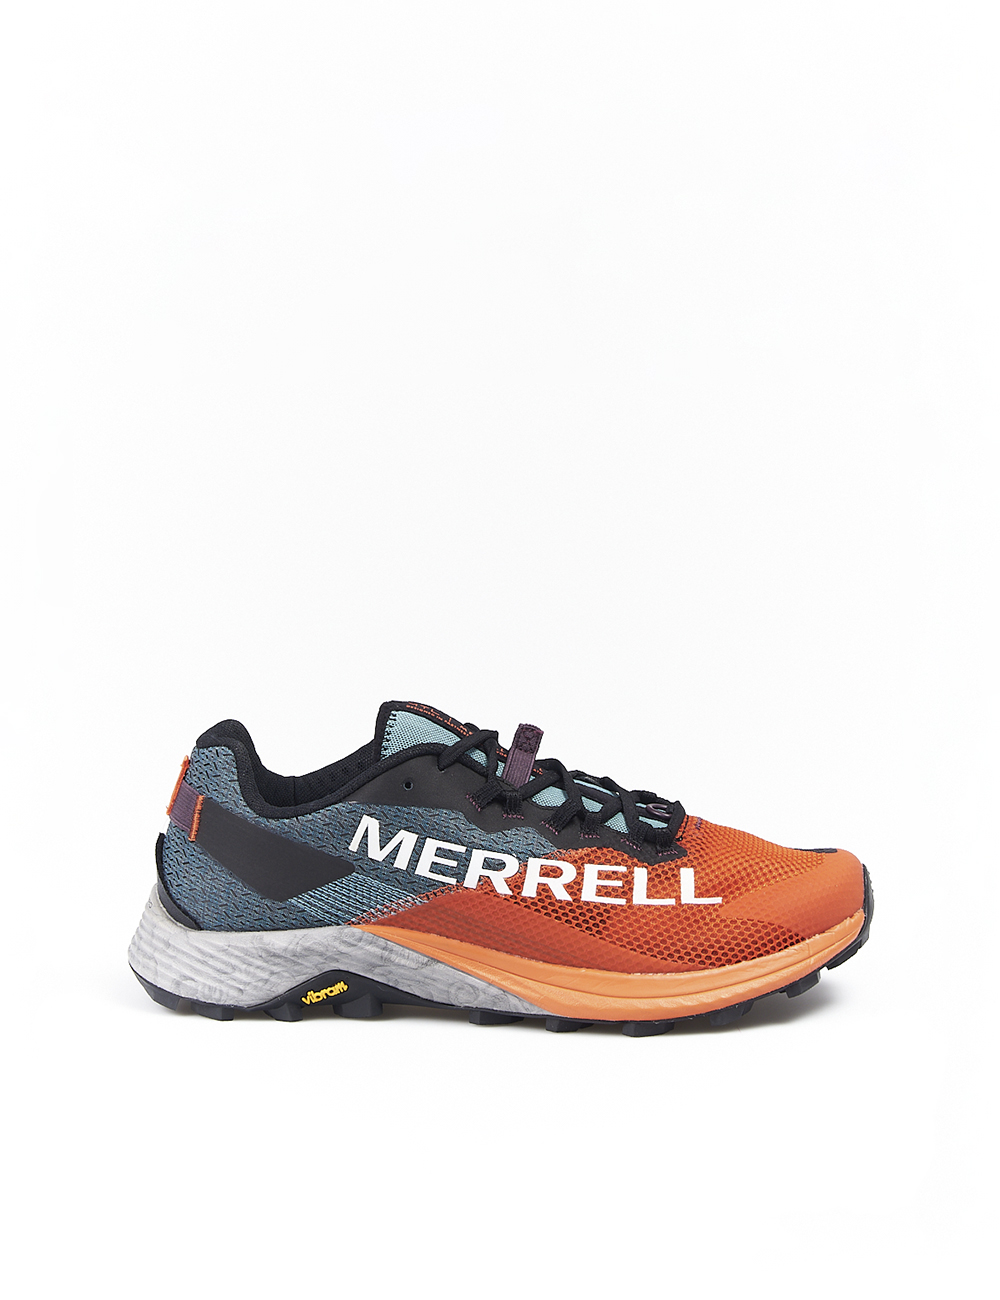 Zapatos MERRELL Hombre (Web - Verde - 44)